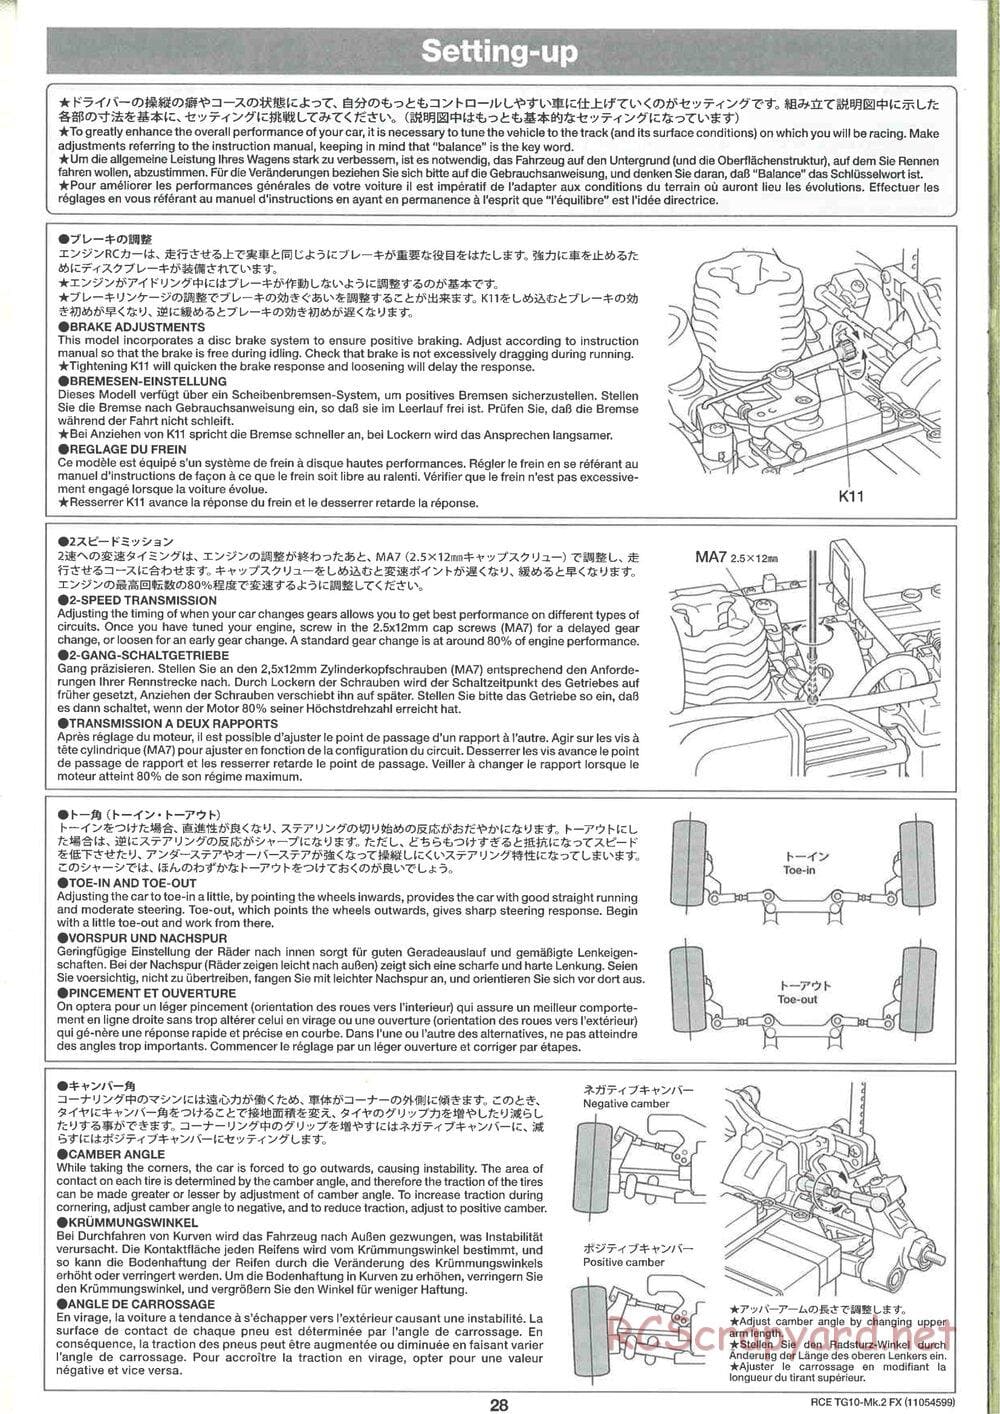 Tamiya - TG10 Mk.2 FX Chassis - Manual - Page 28